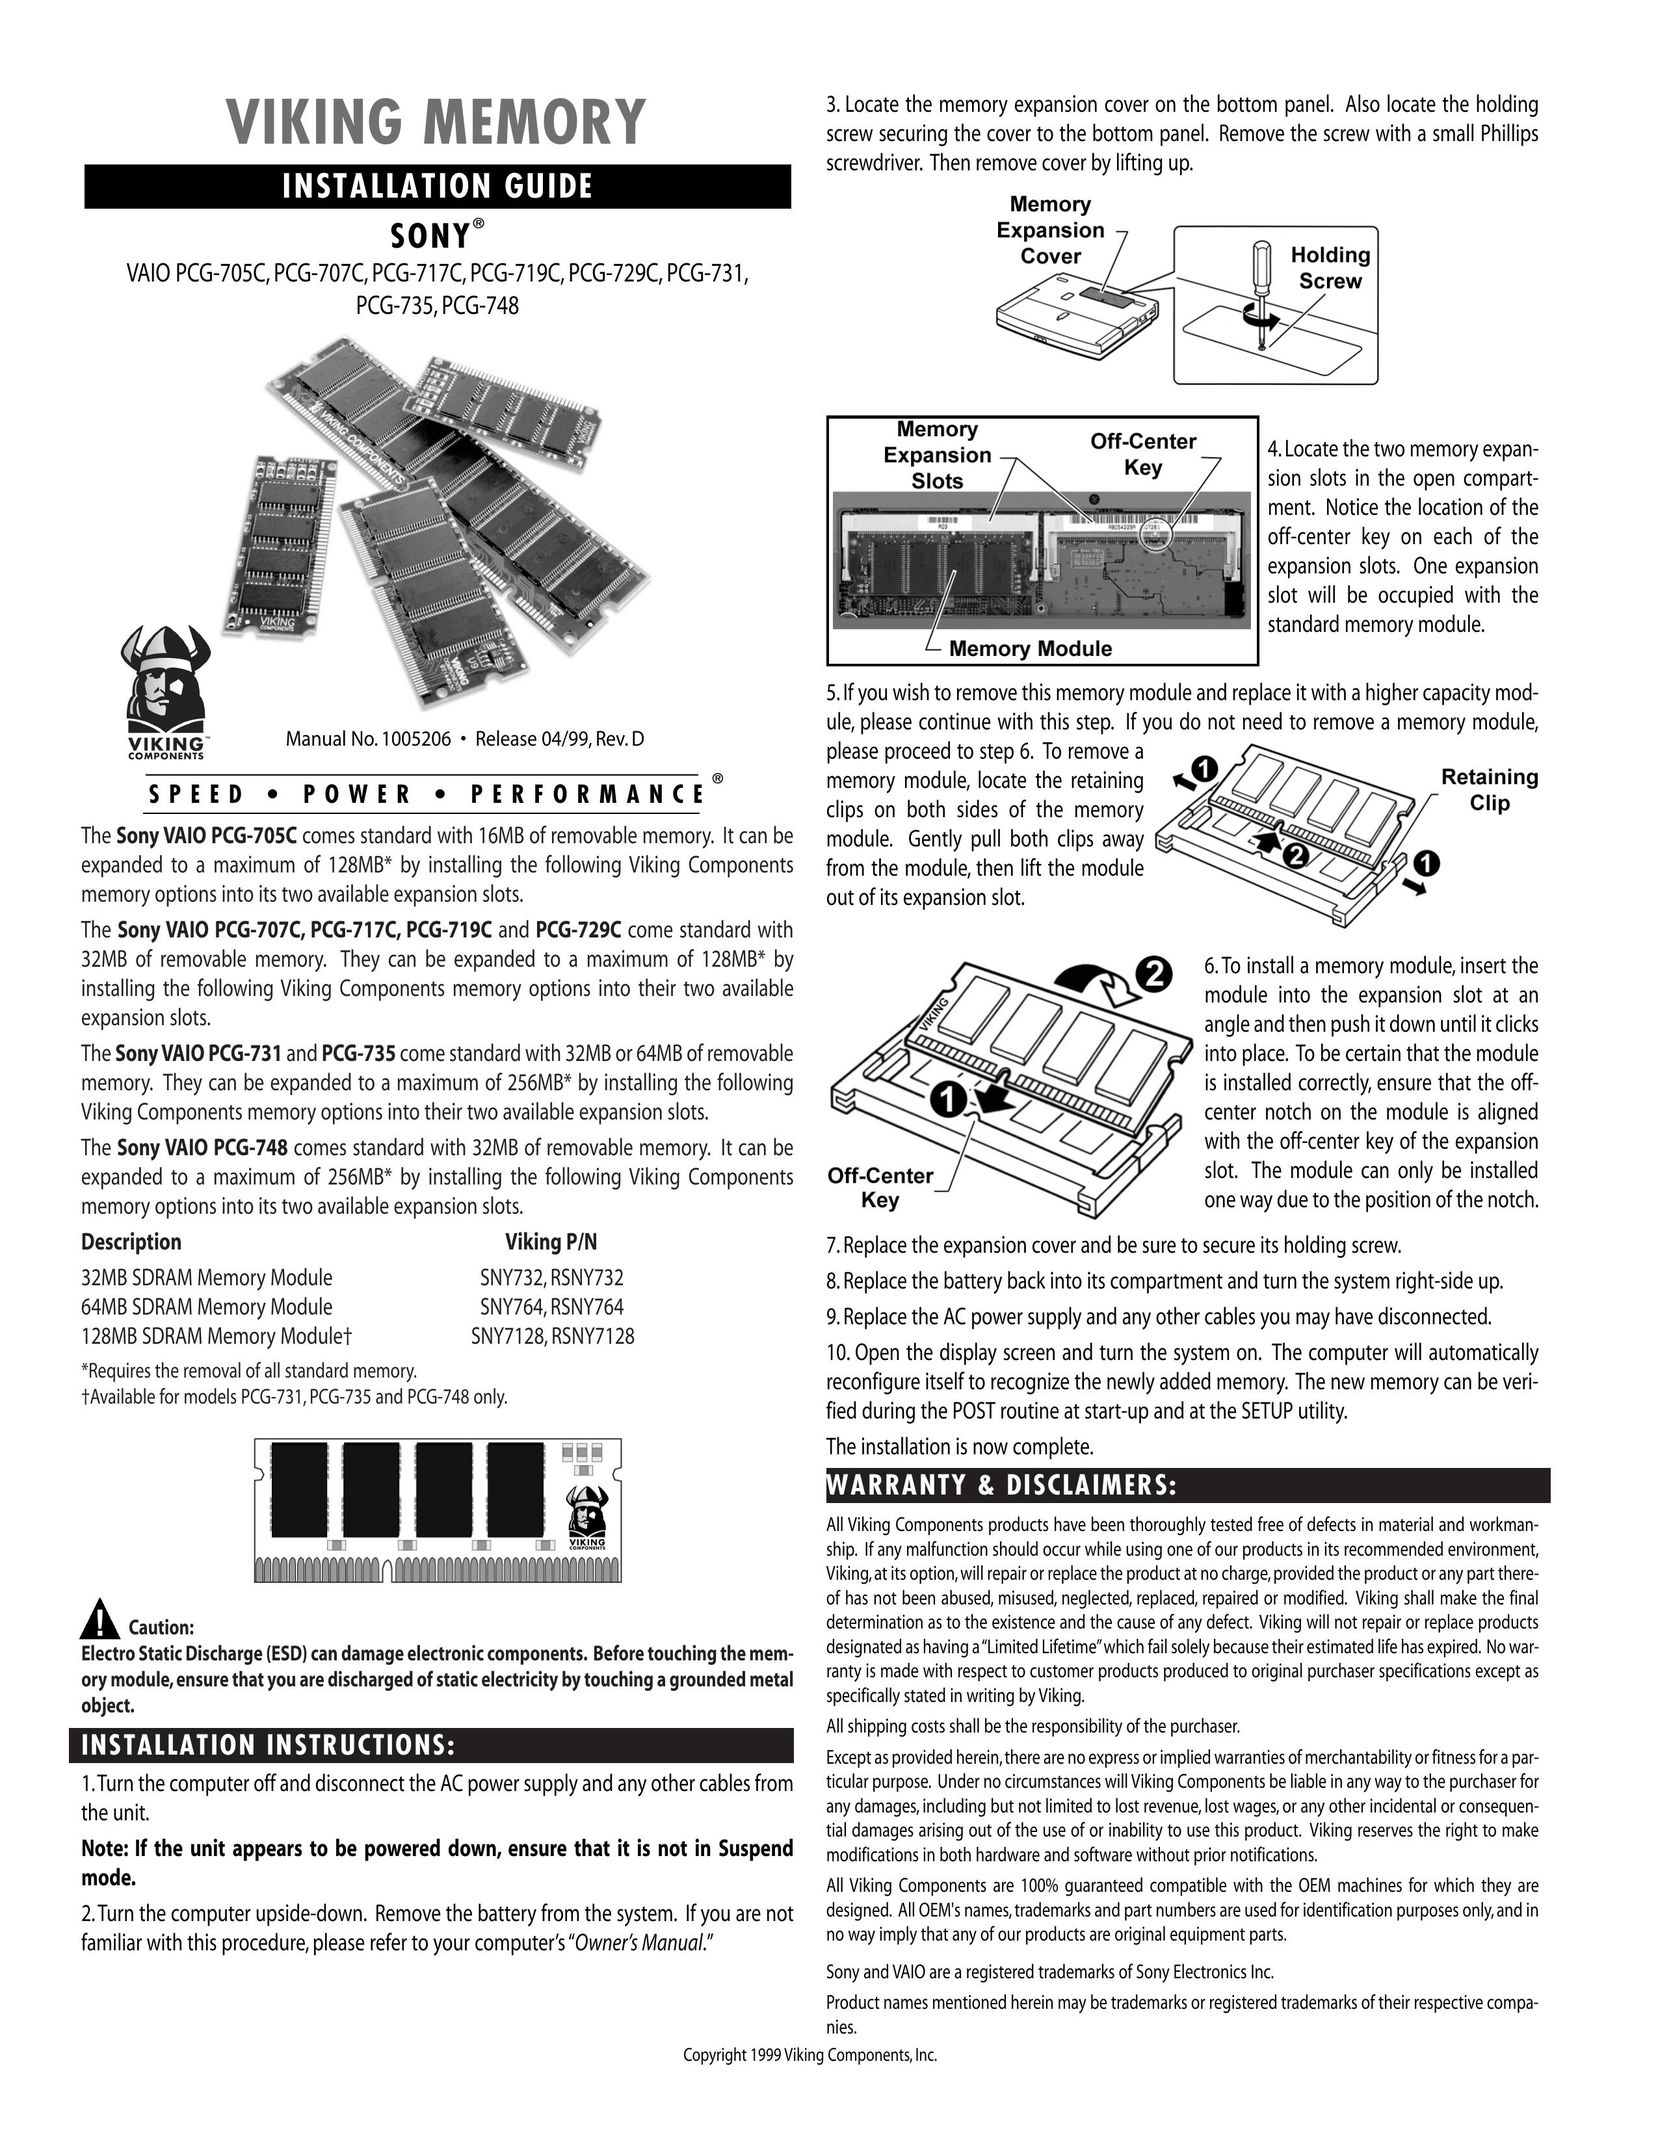 Viking InterWorks PCG-717C Personal Computer User Manual